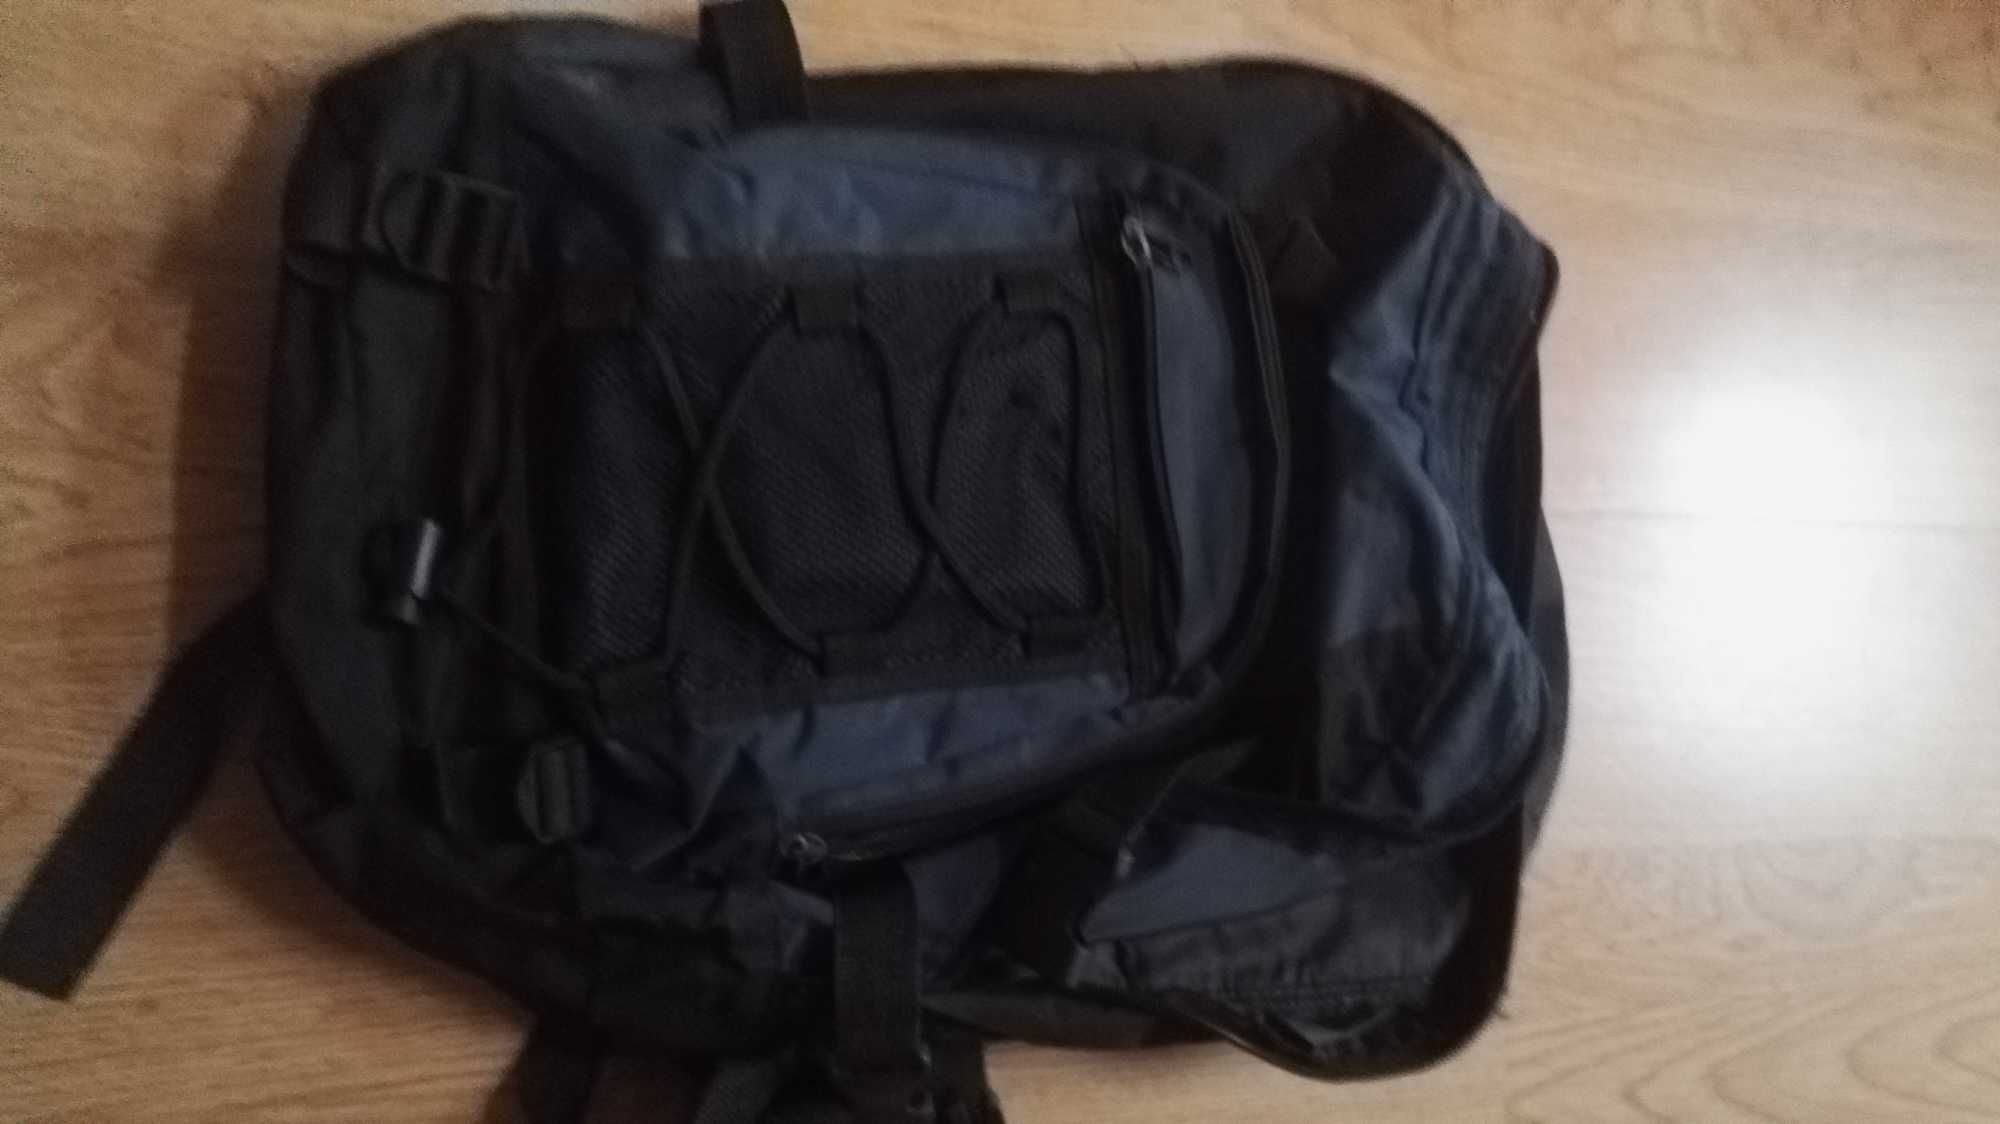 Plecak, Plecaki dla dzieci do szkoły, na wycieczkę